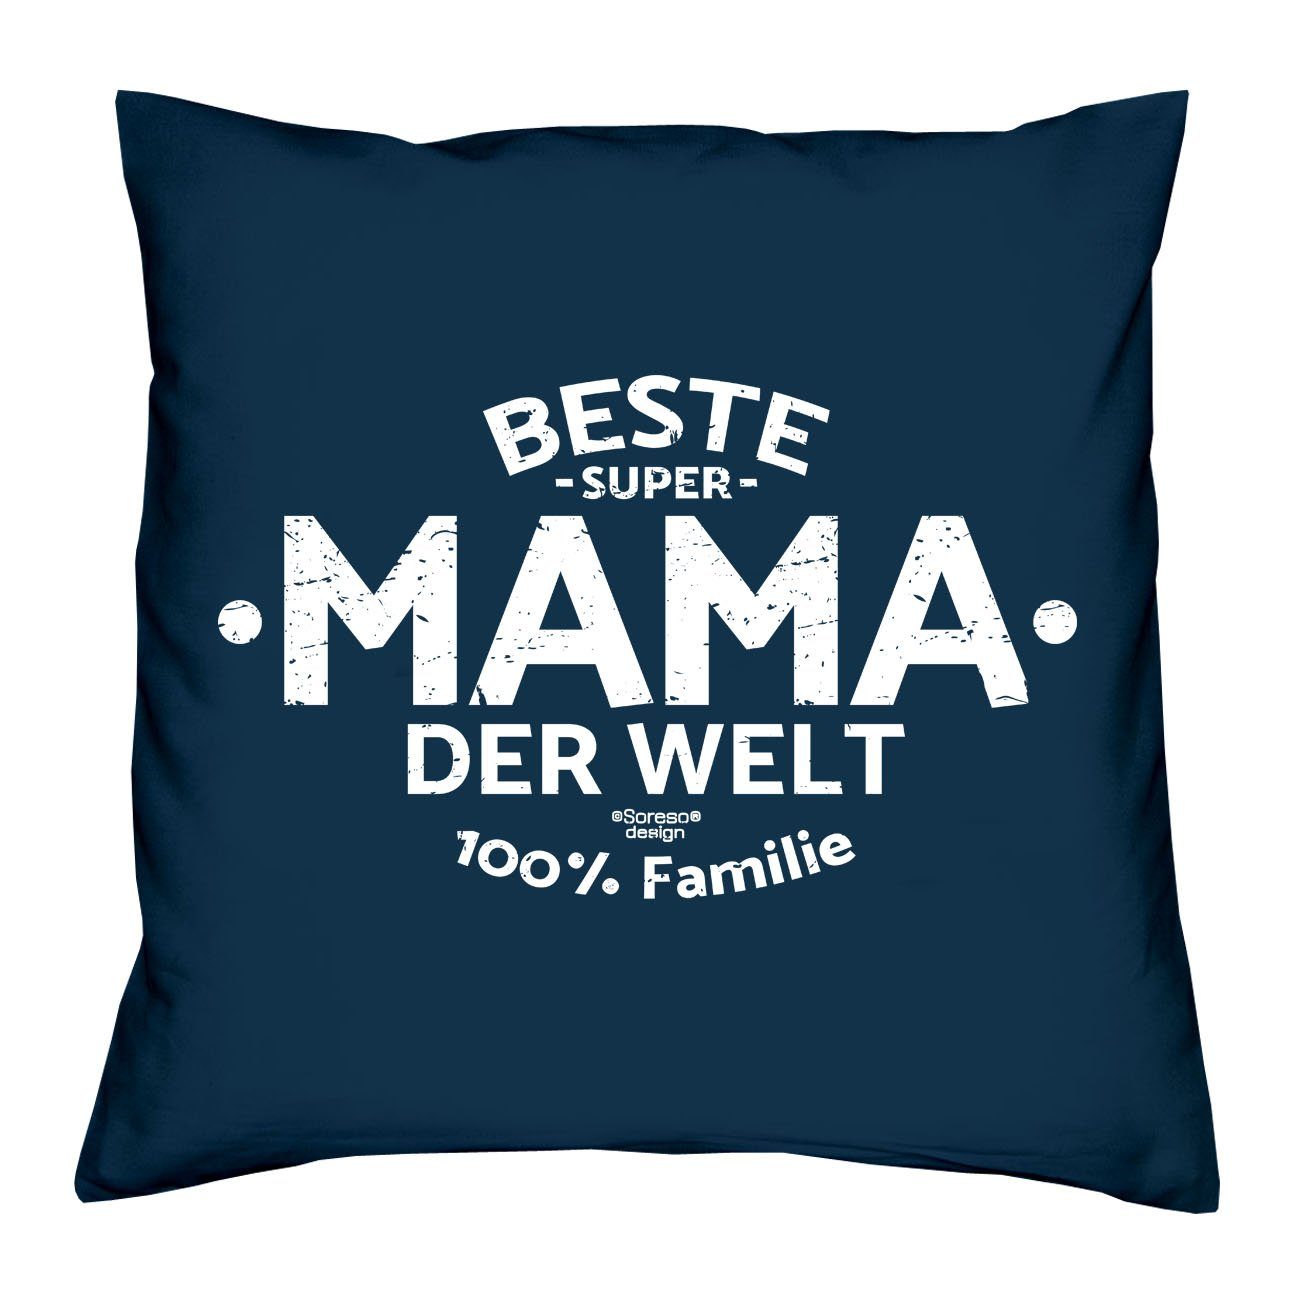 Welt Kissen-Set Geschenk Bester der Welt Muttertag Dekokissen der navy-blau Vatertag Urkunden, Soreso® Papa Beste Mama mit